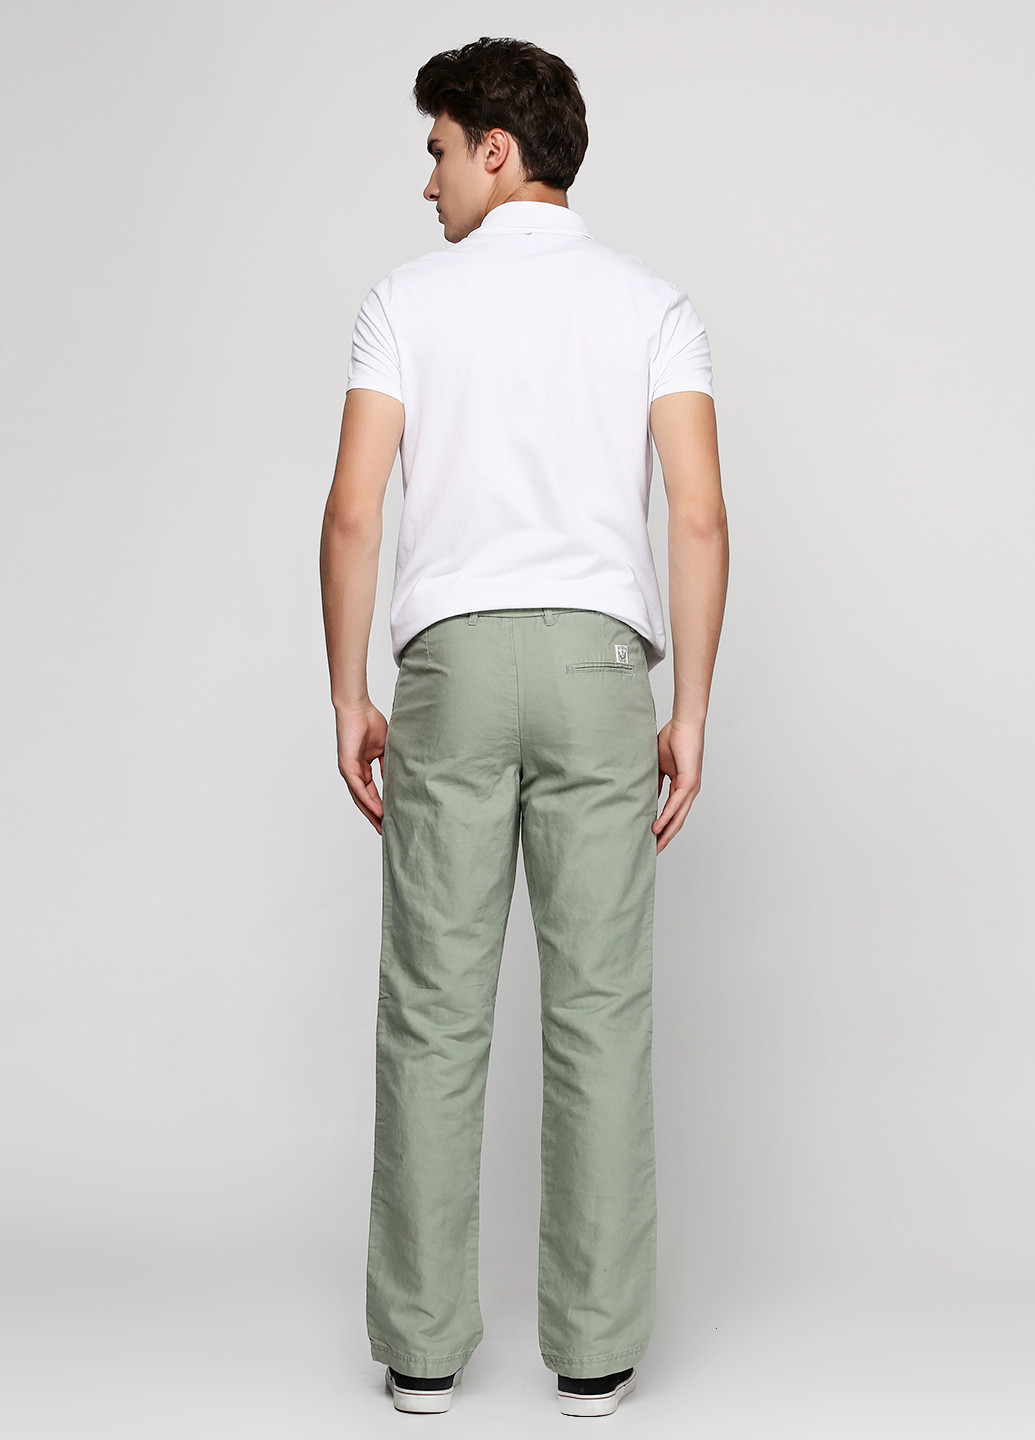 Бледно-зеленые кэжуал демисезонные прямые брюки Legend & Soul